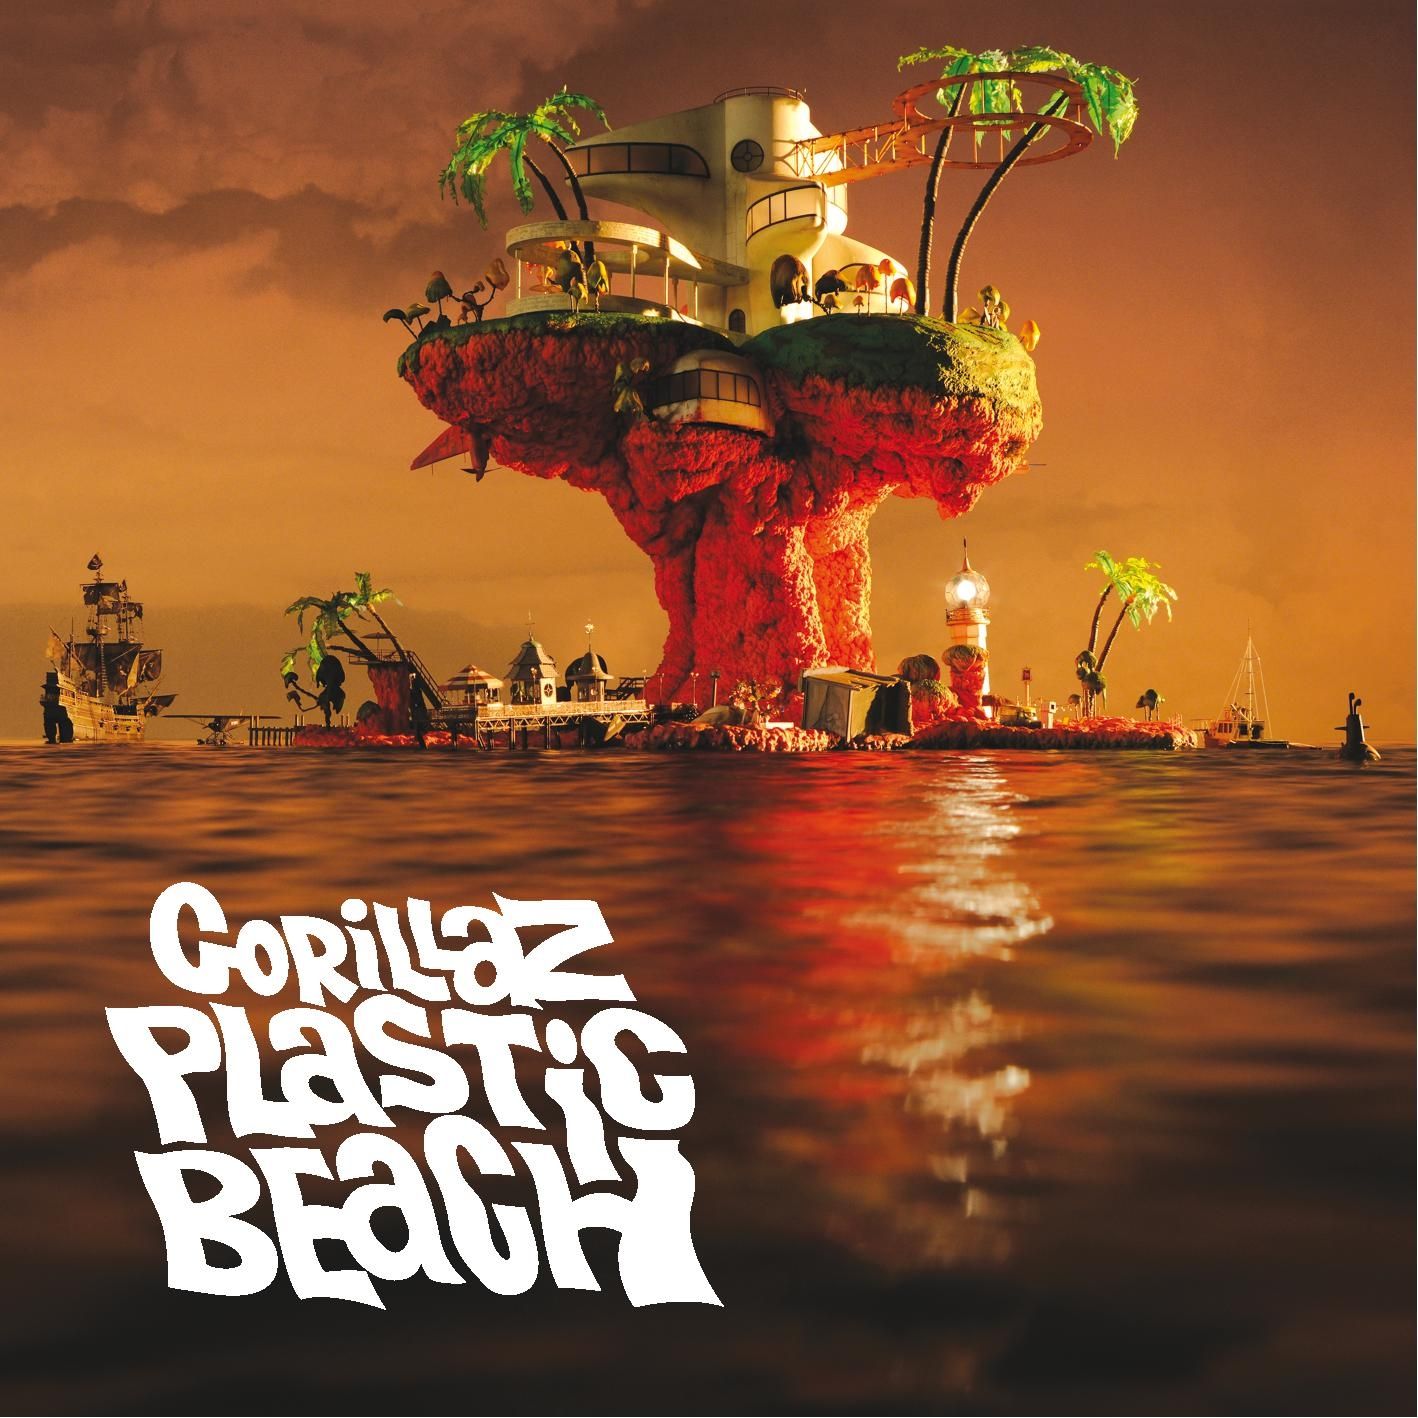 Imagem do álbum Plastic Beach do(a) artista Gorillaz